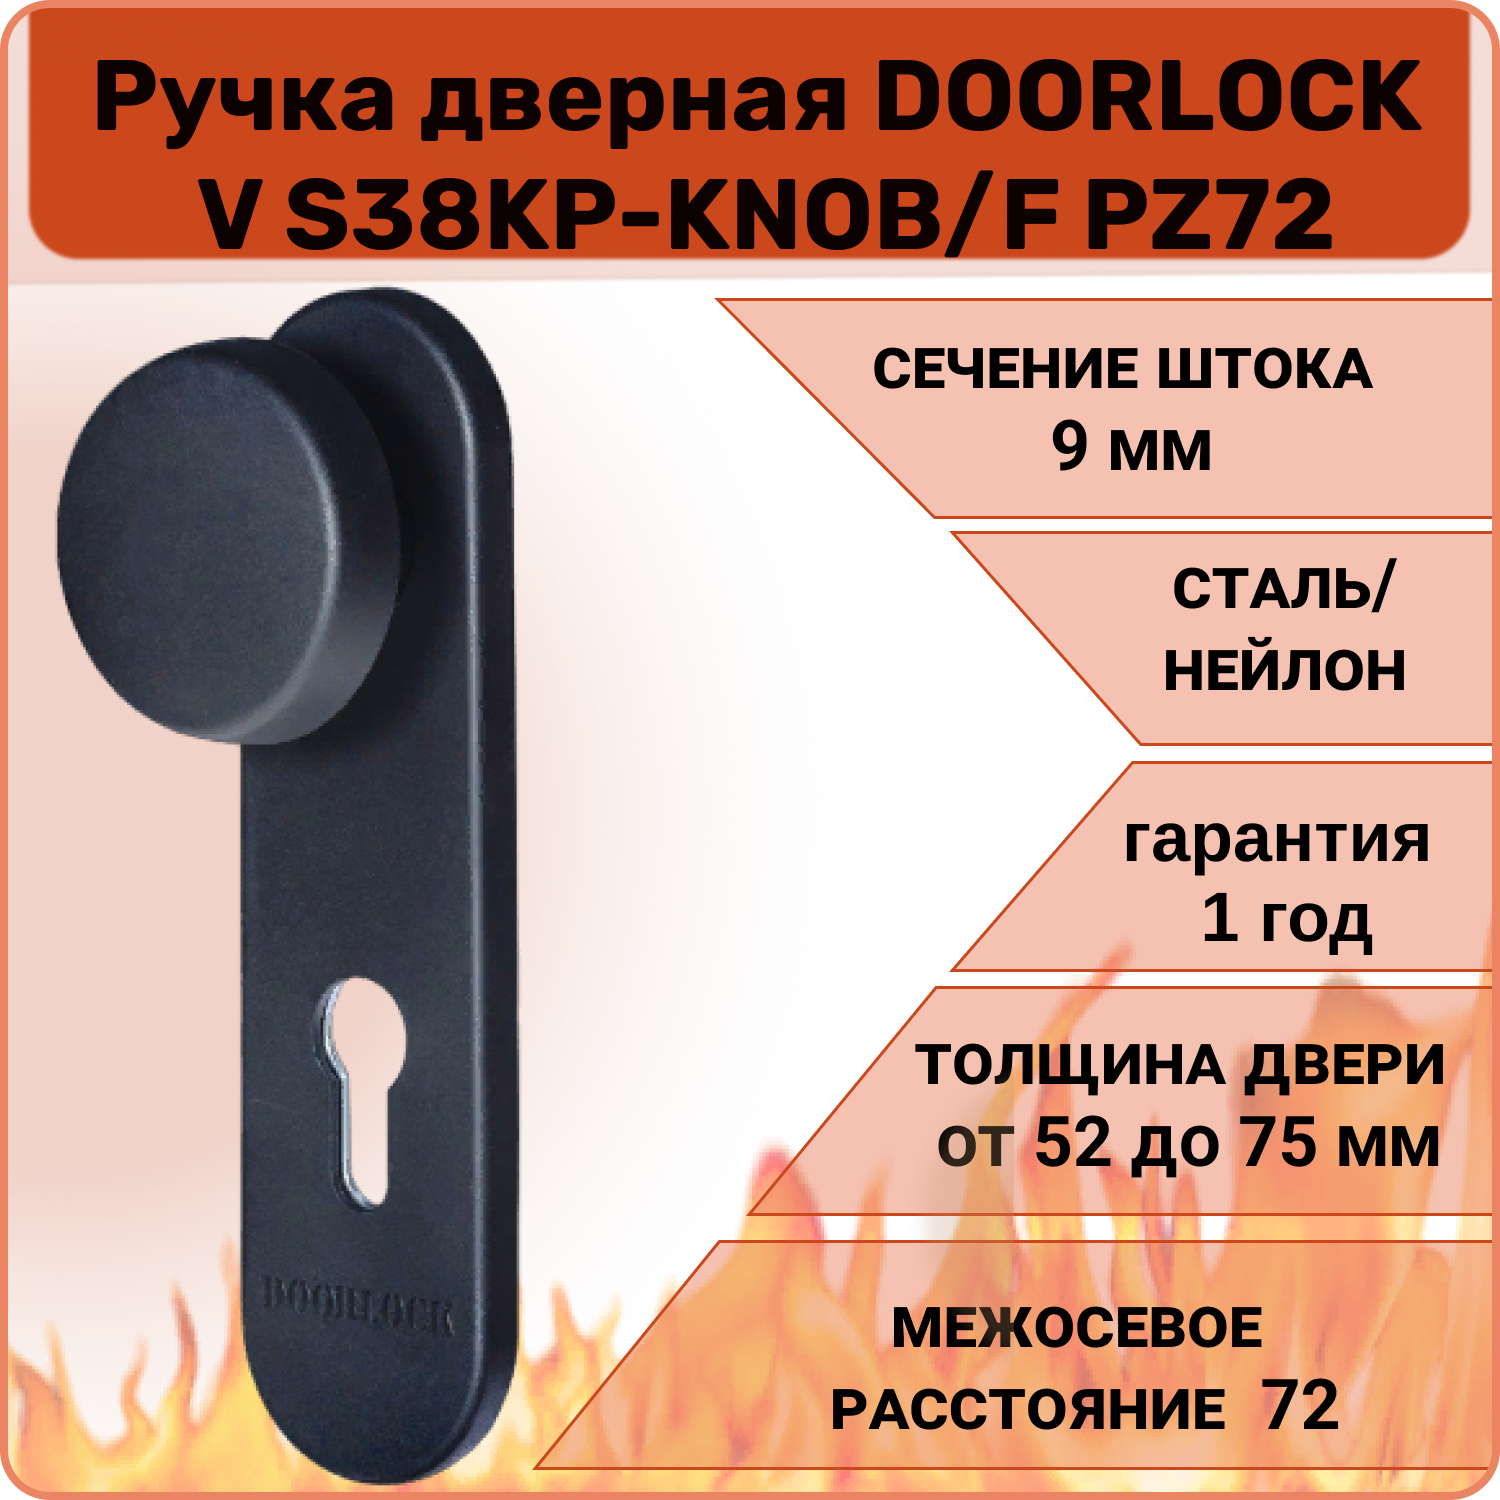 Ручка дверная противопожарная DOORLOCK V S38KP-KNOB/F PZ72, черная